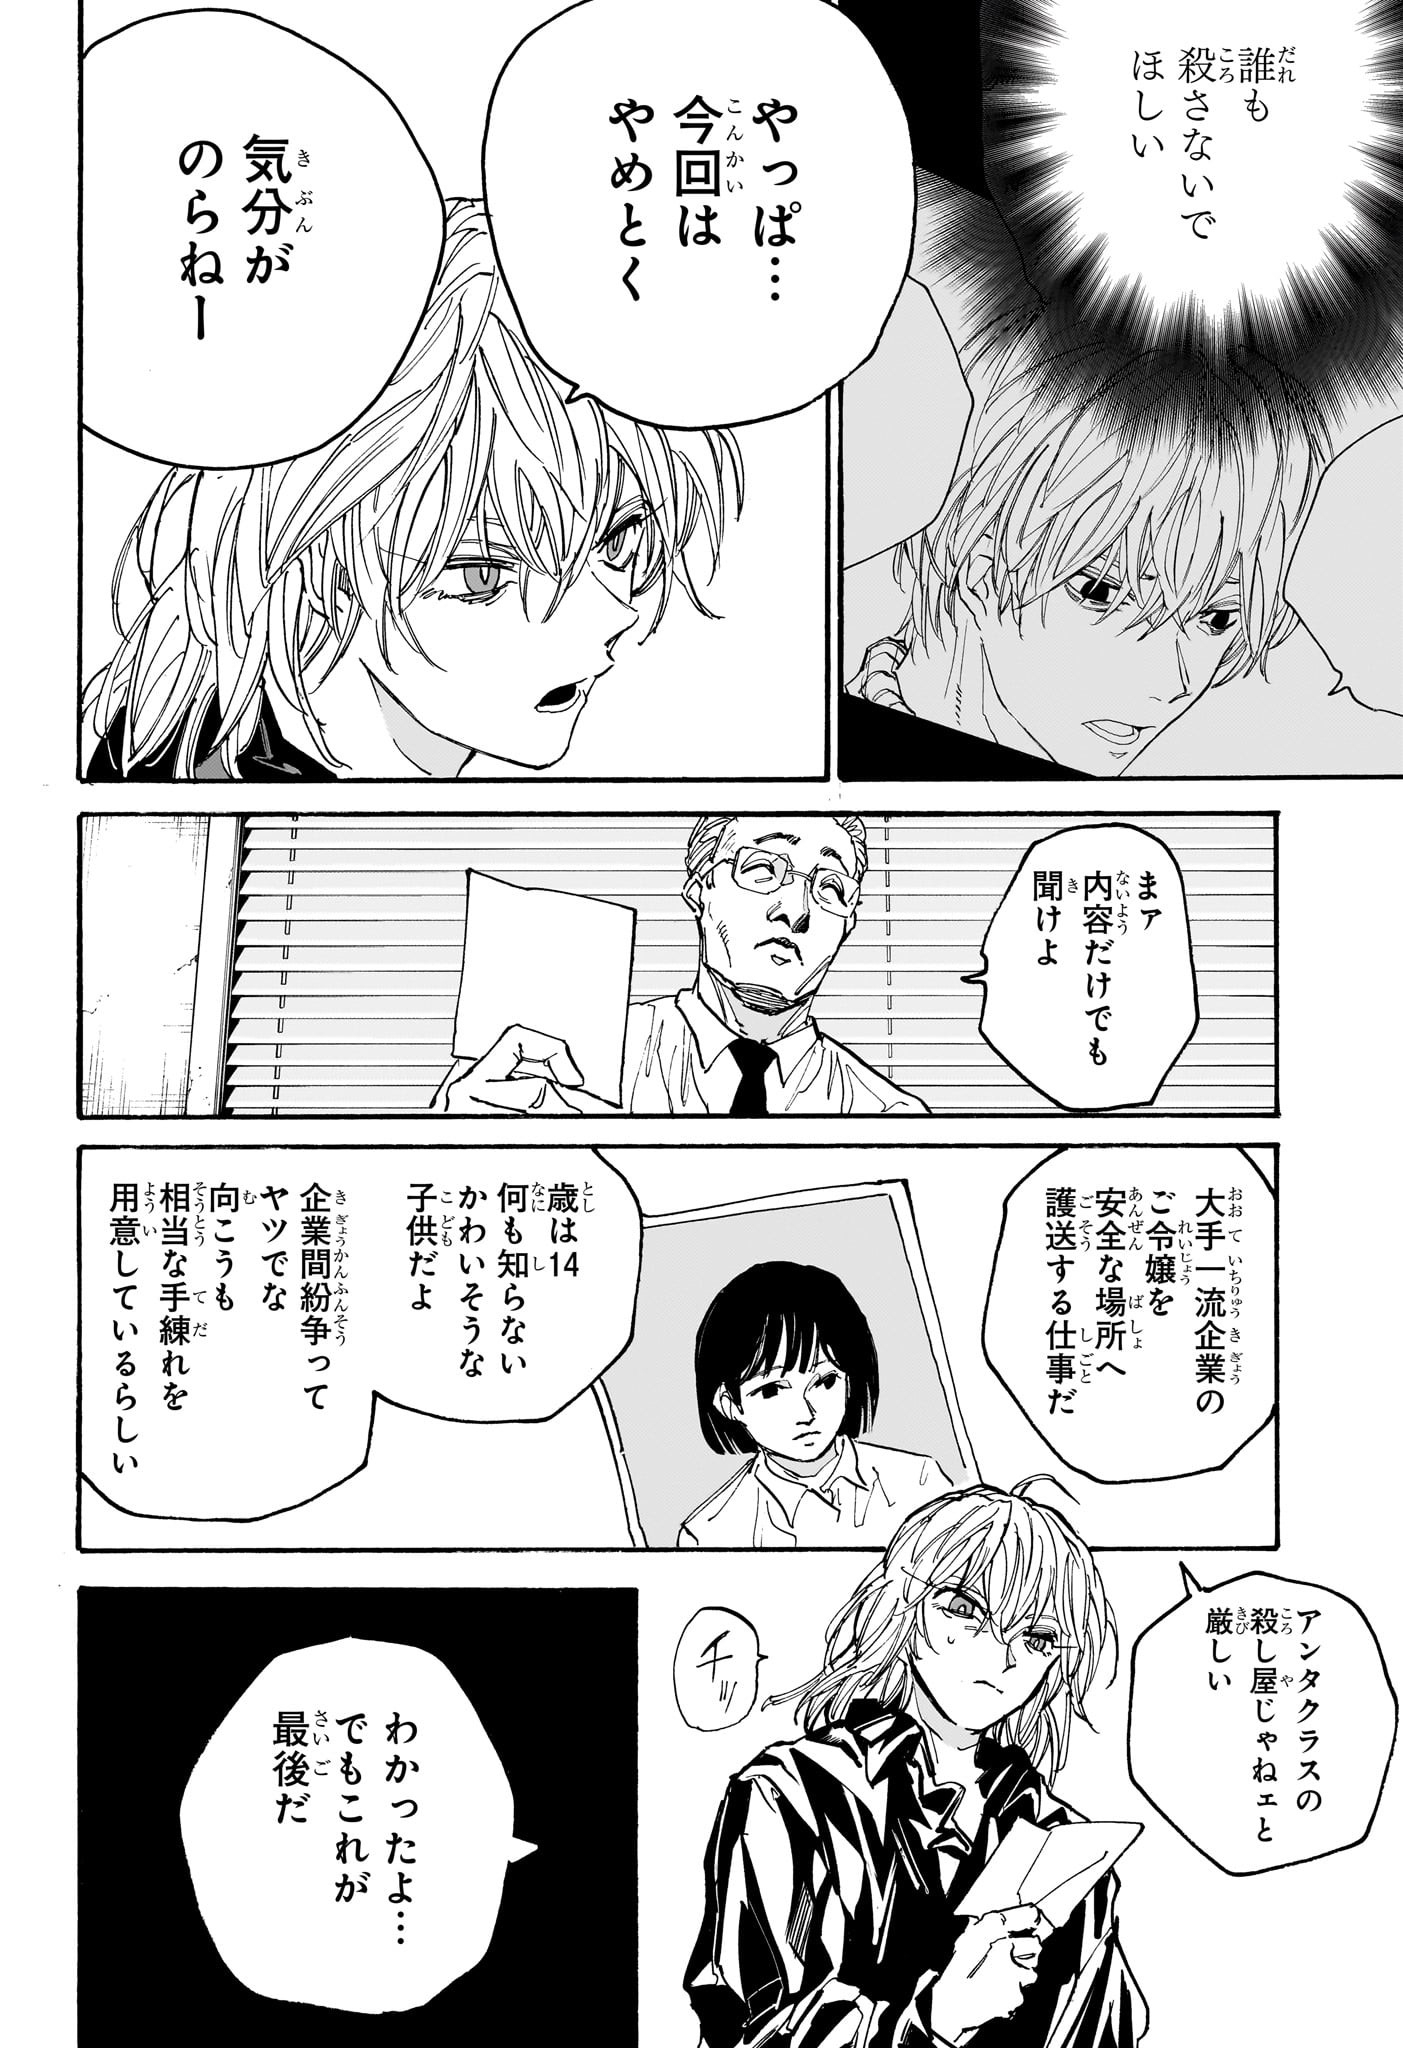 Sakamoto Days - Chapter 174 - Page 10